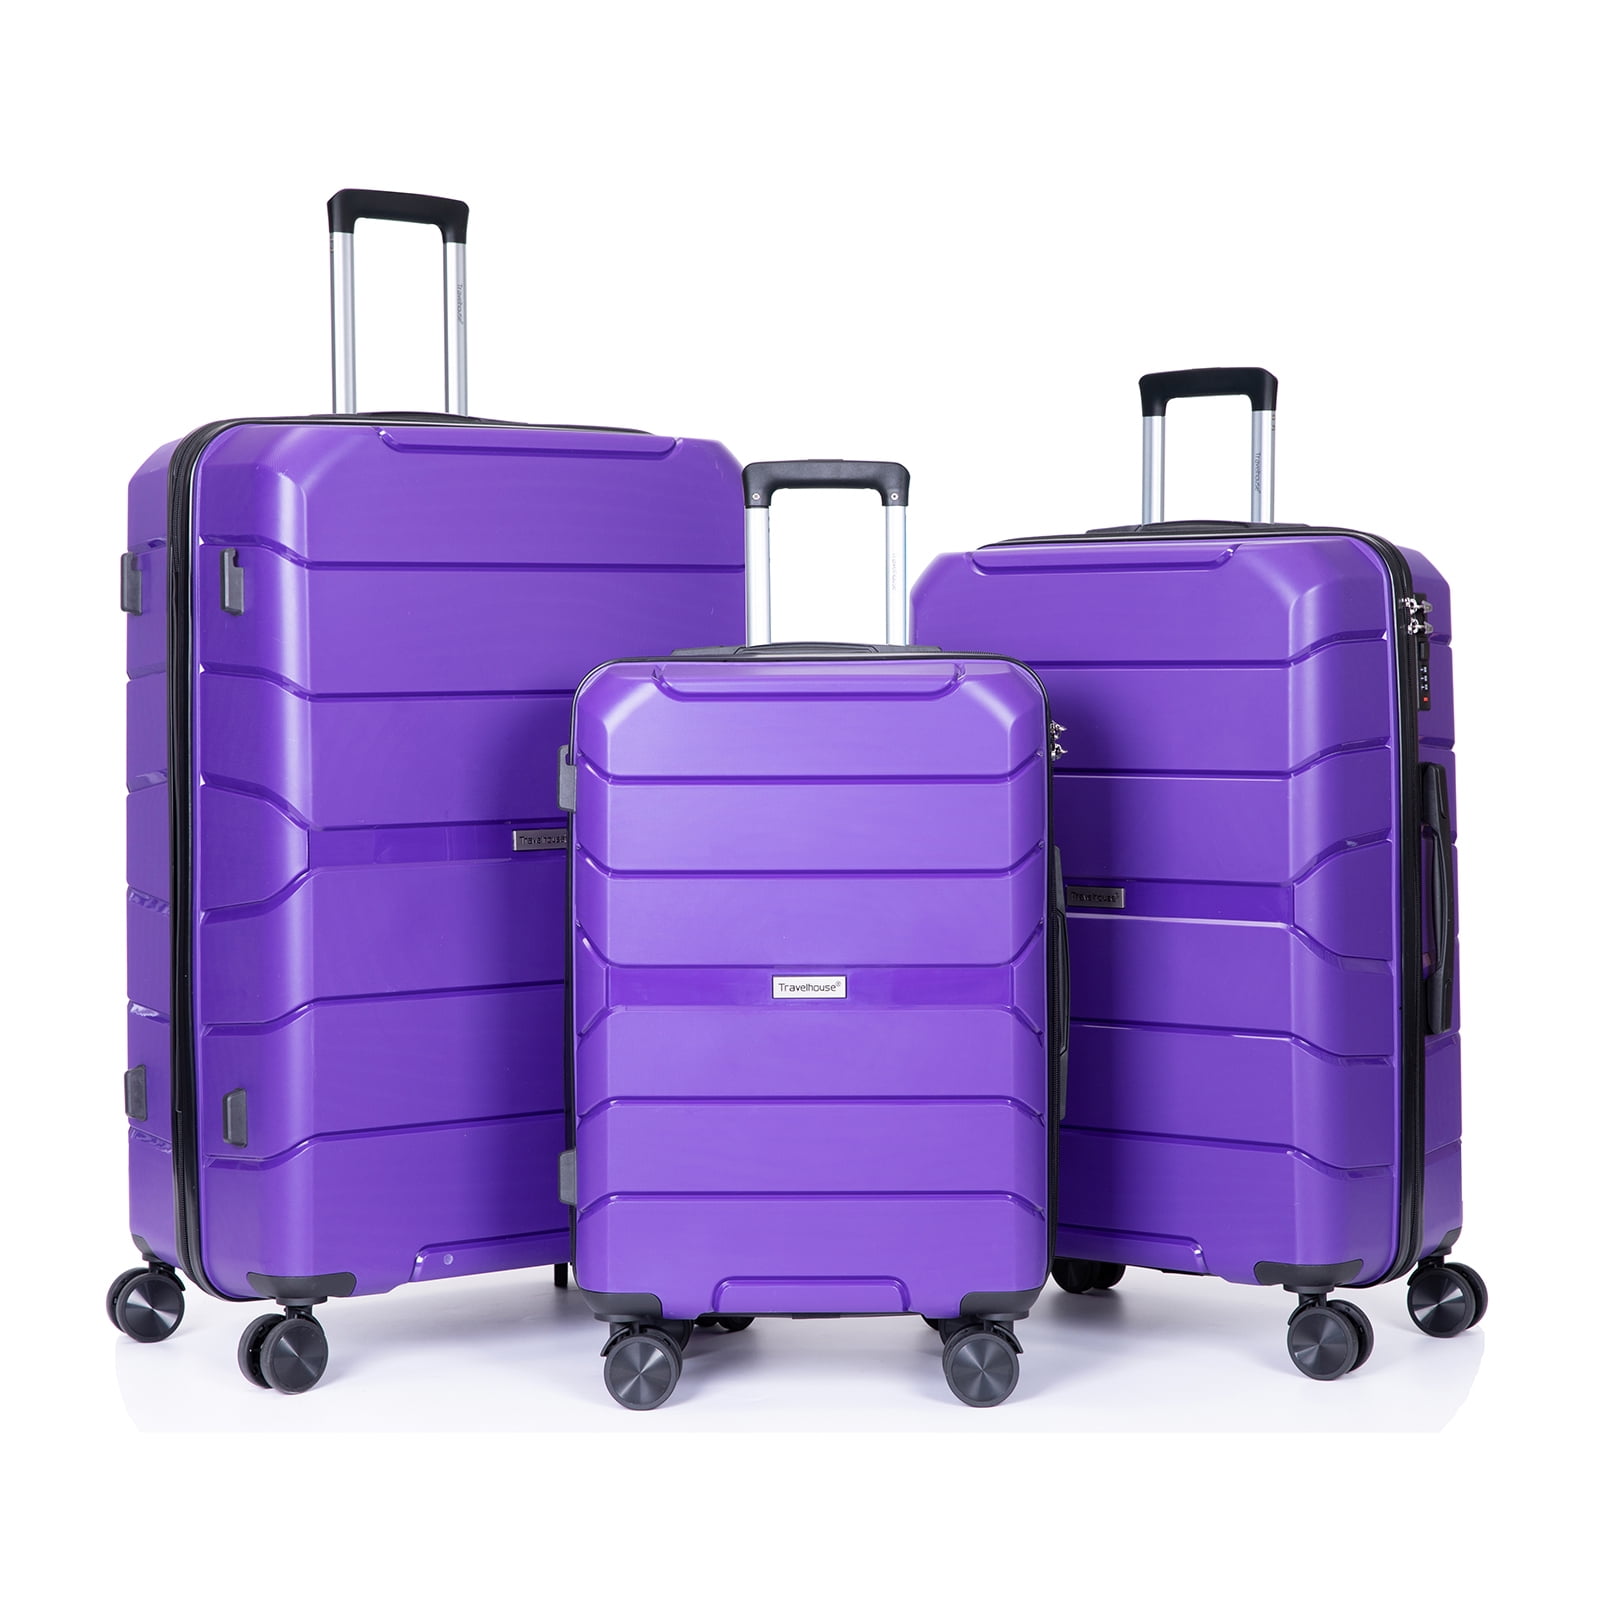 3 Piece Luggage Sets, Travelhouse Hard Shell Suitcase Set with TSA Lock ...